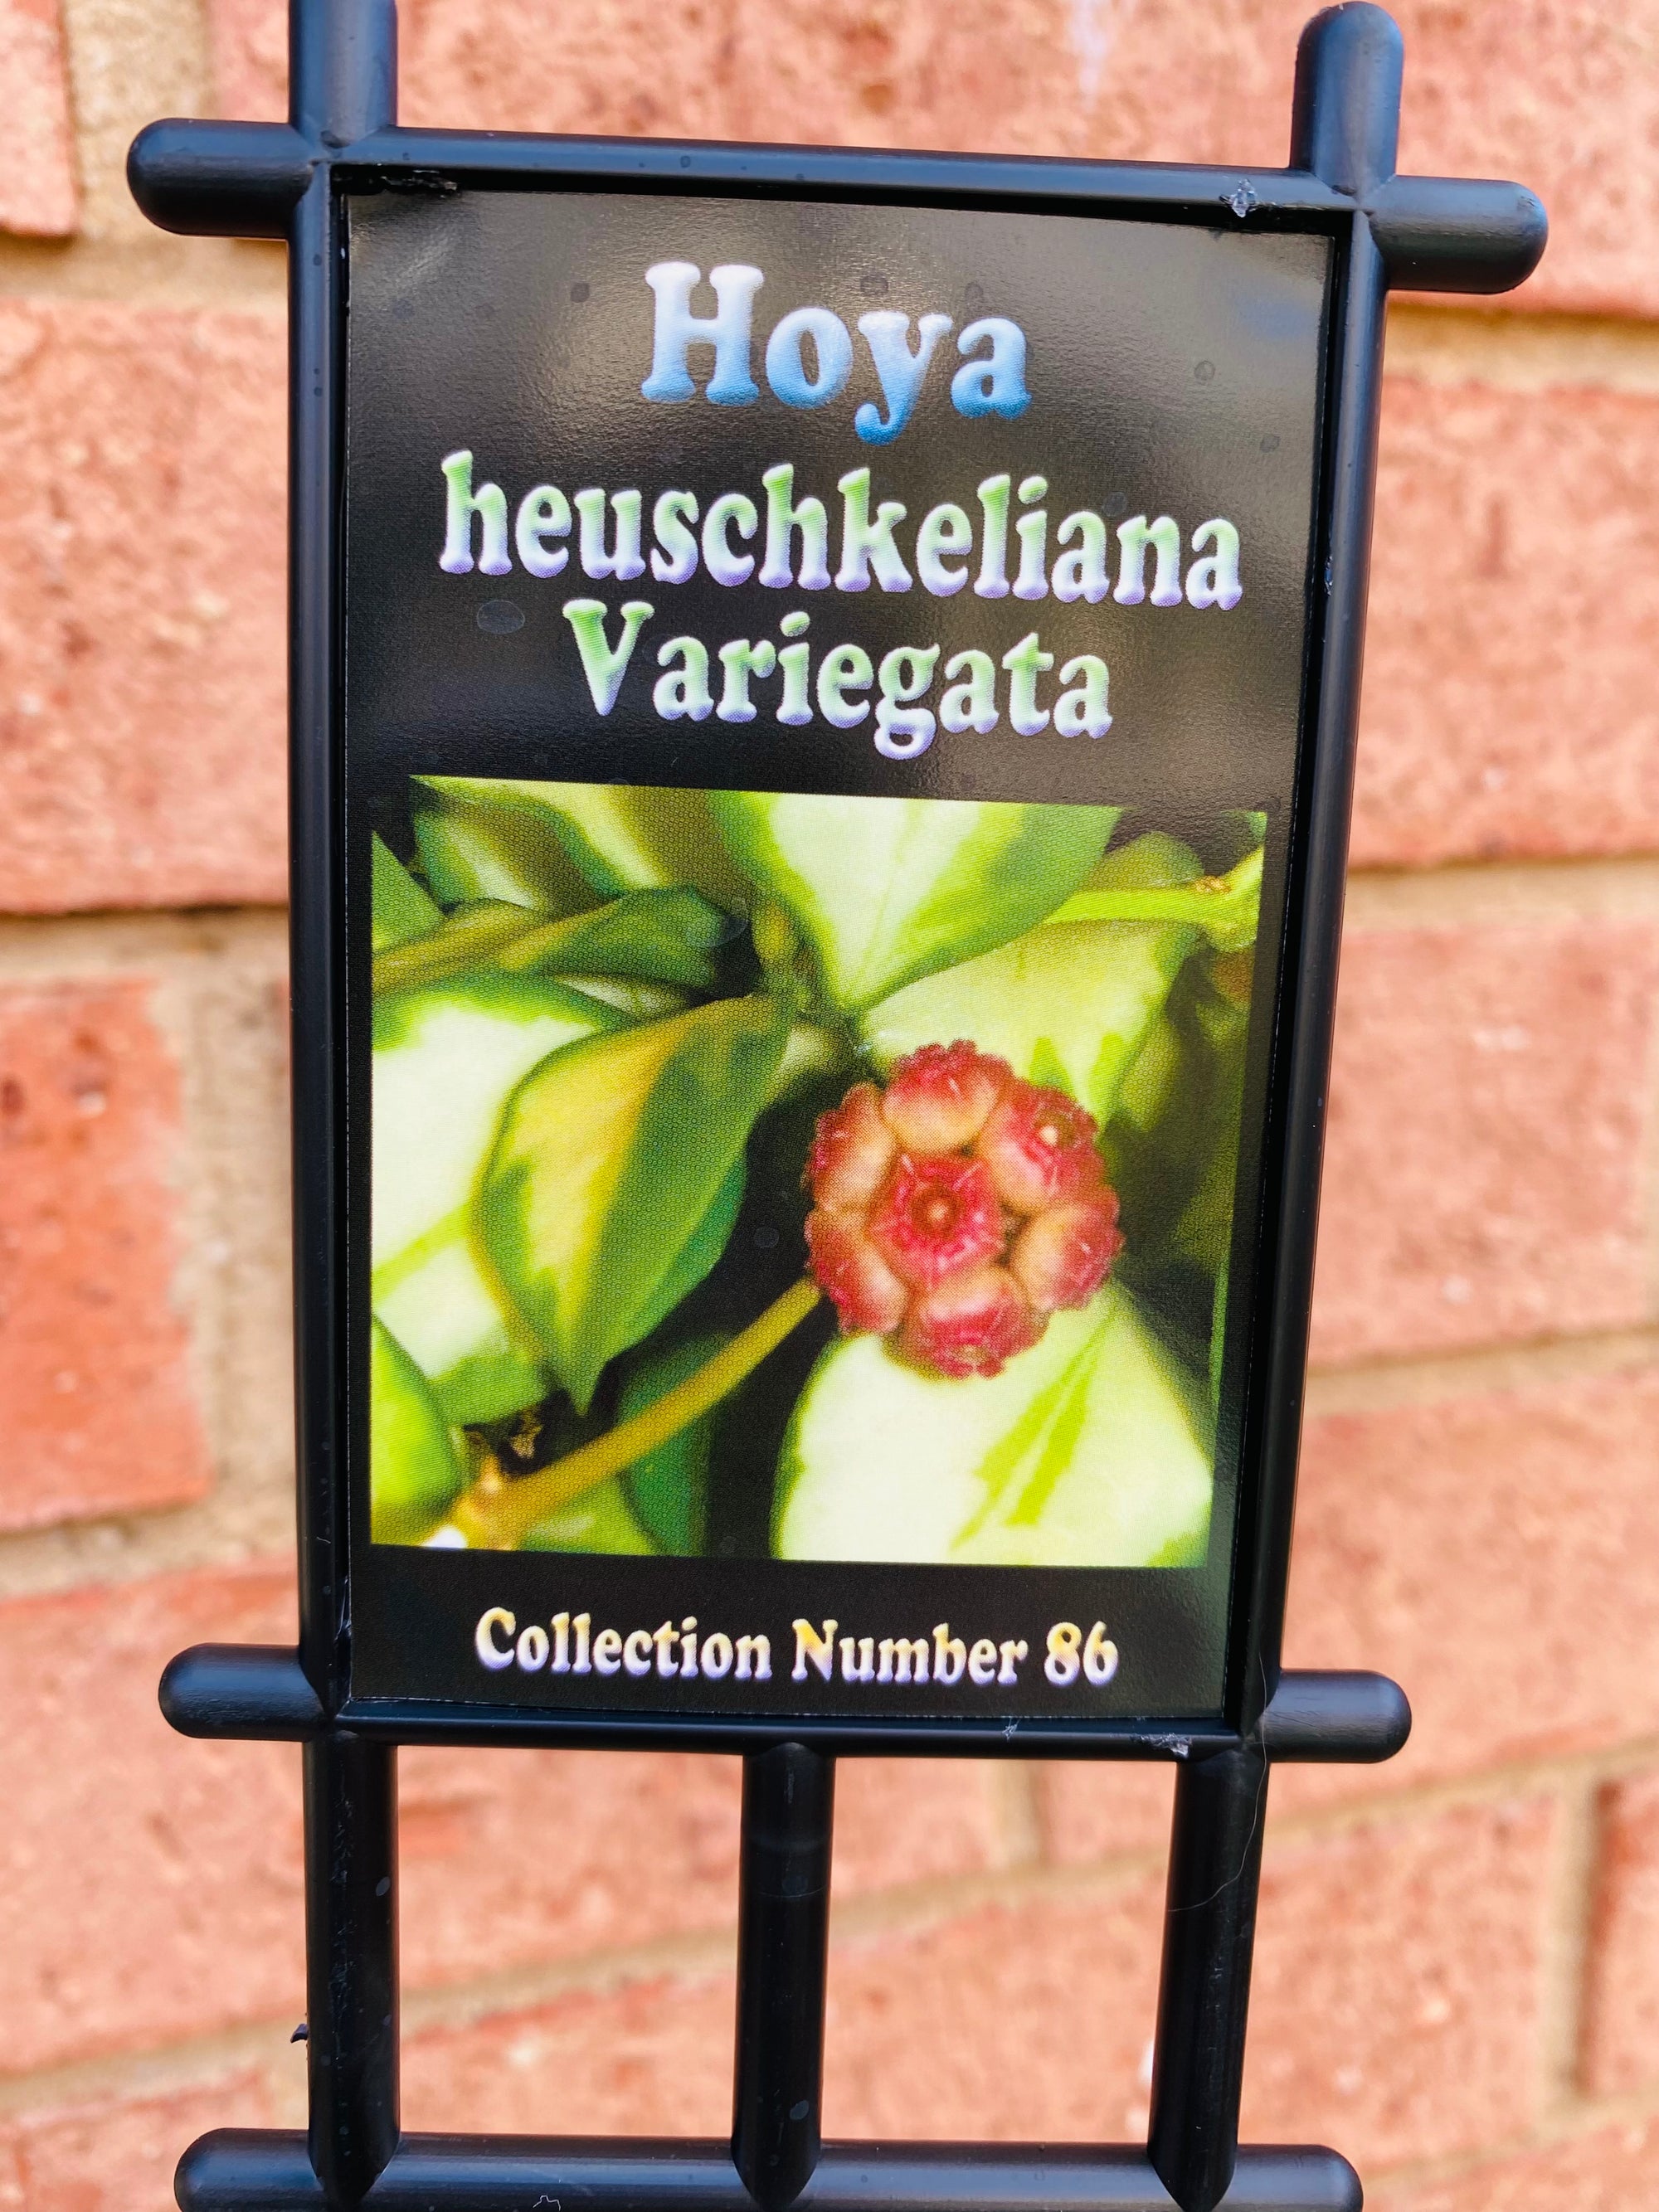 Hoya - Heuschkeliana variegata Collection No. 86